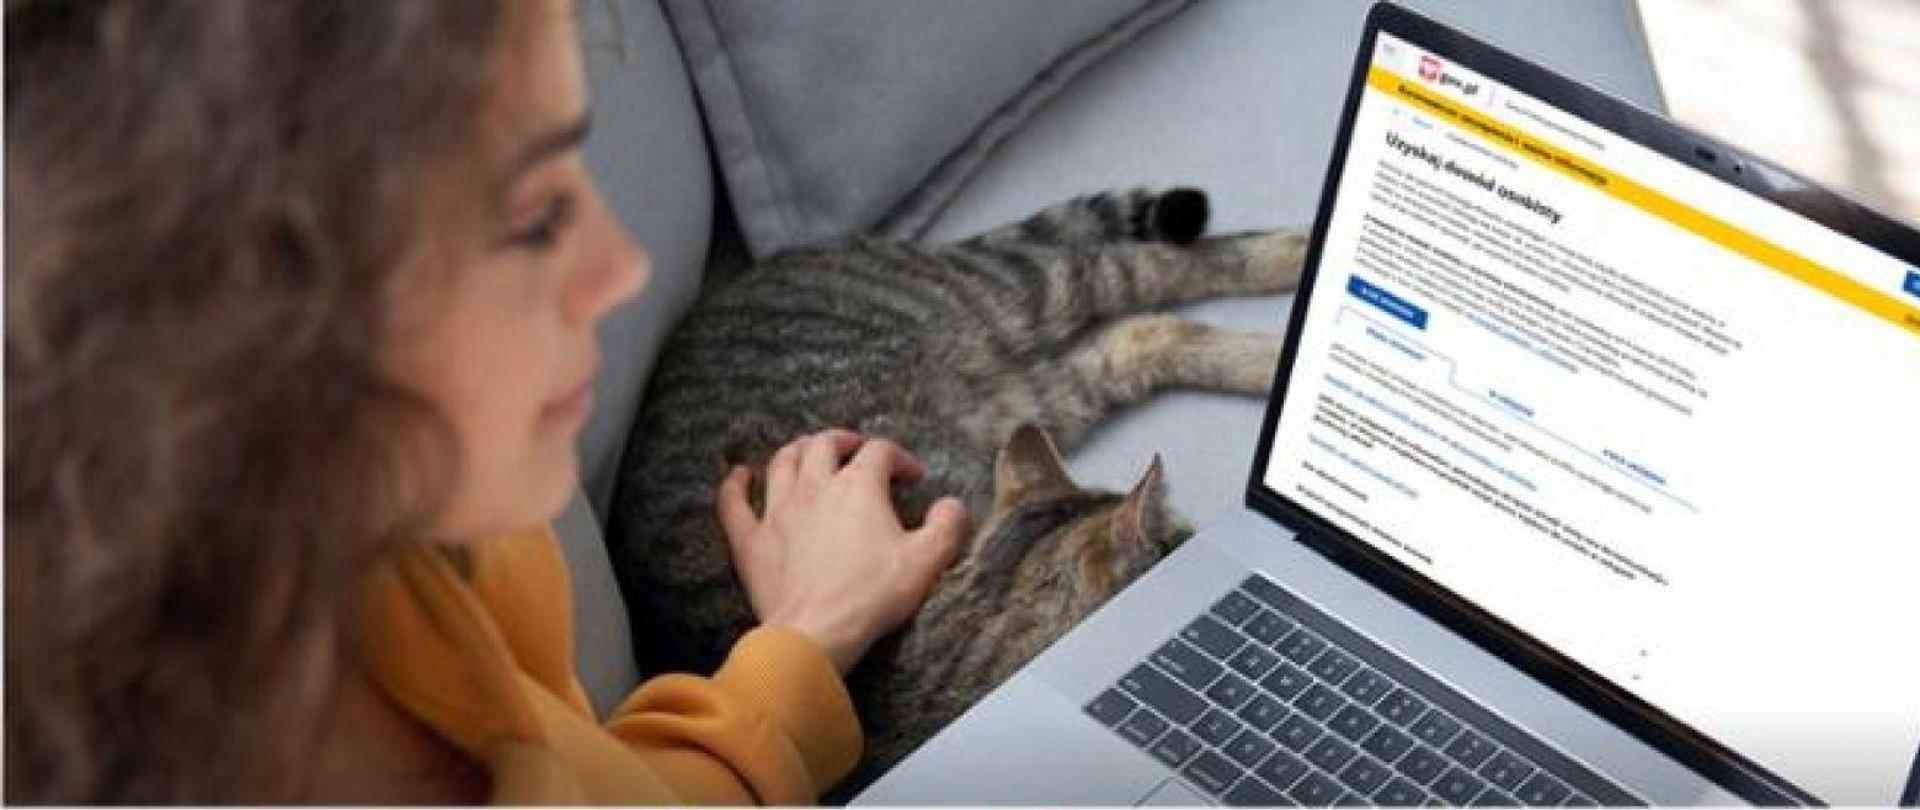 kobieta siedzi przed monitorem komputera, na którym widnieje napis uzyskaj dowód osobisty, obok na kanapie lezy kot